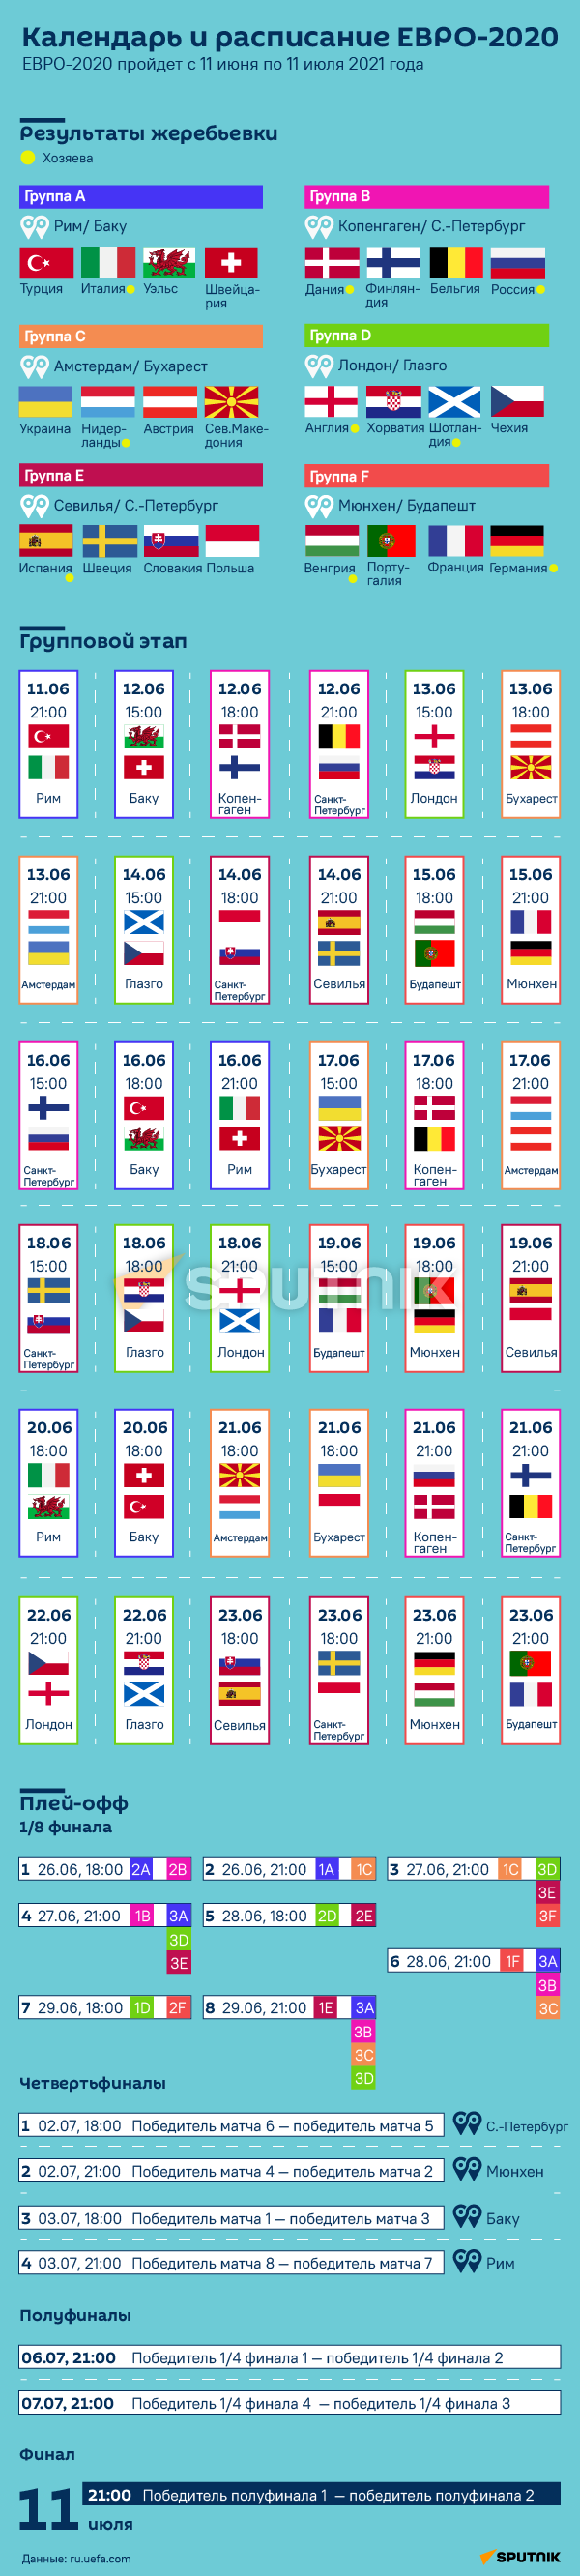 Календарь и расписание ЕВРО-2020 WATERMARK - Sputnik Таджикистан